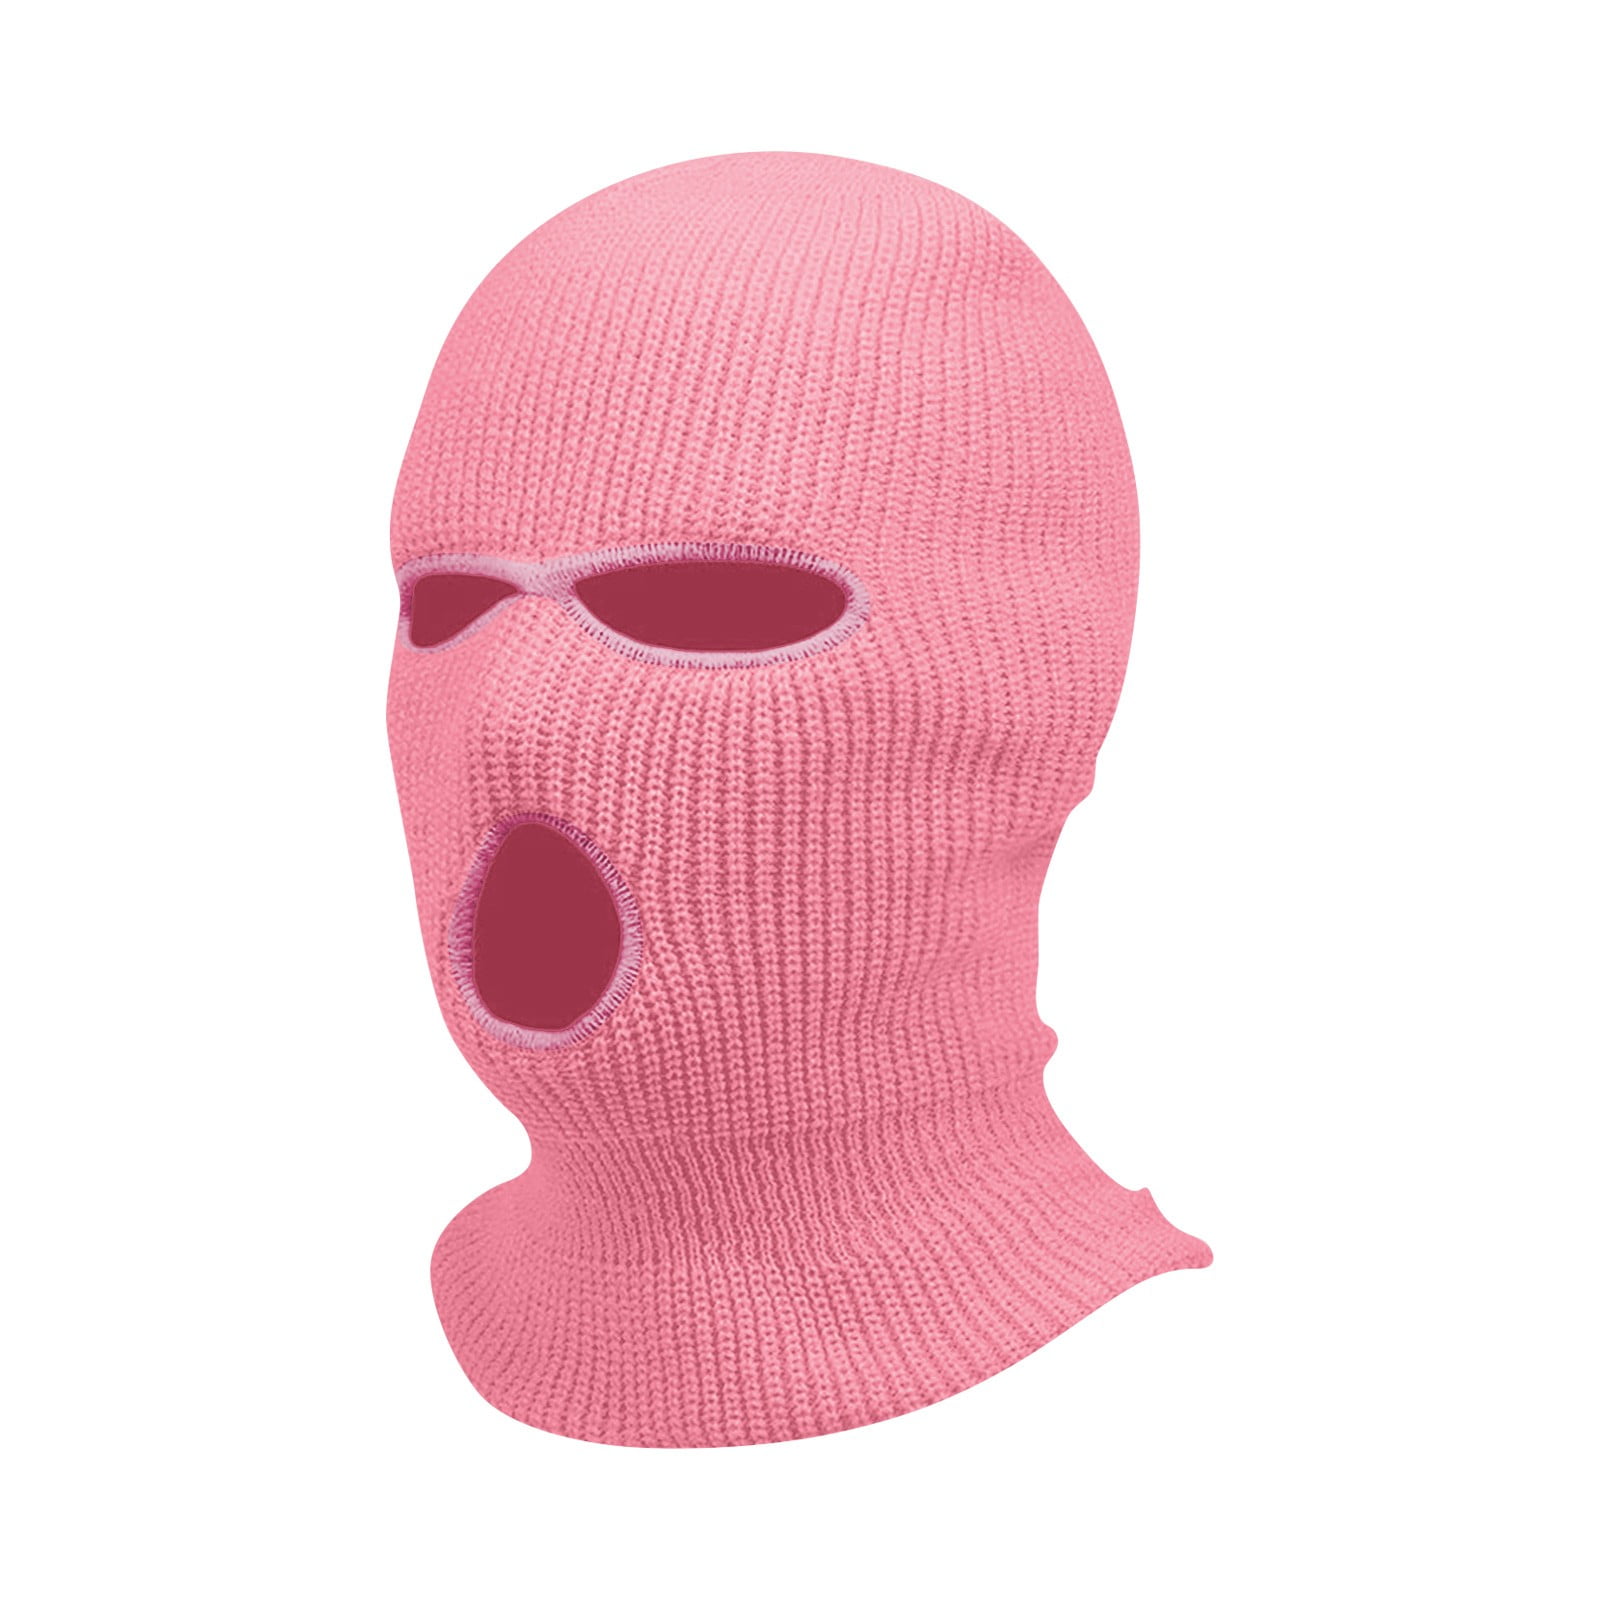 DENGDENG Face Mask Winter for Men Knitted 3 Hole Face Cover Ski ...